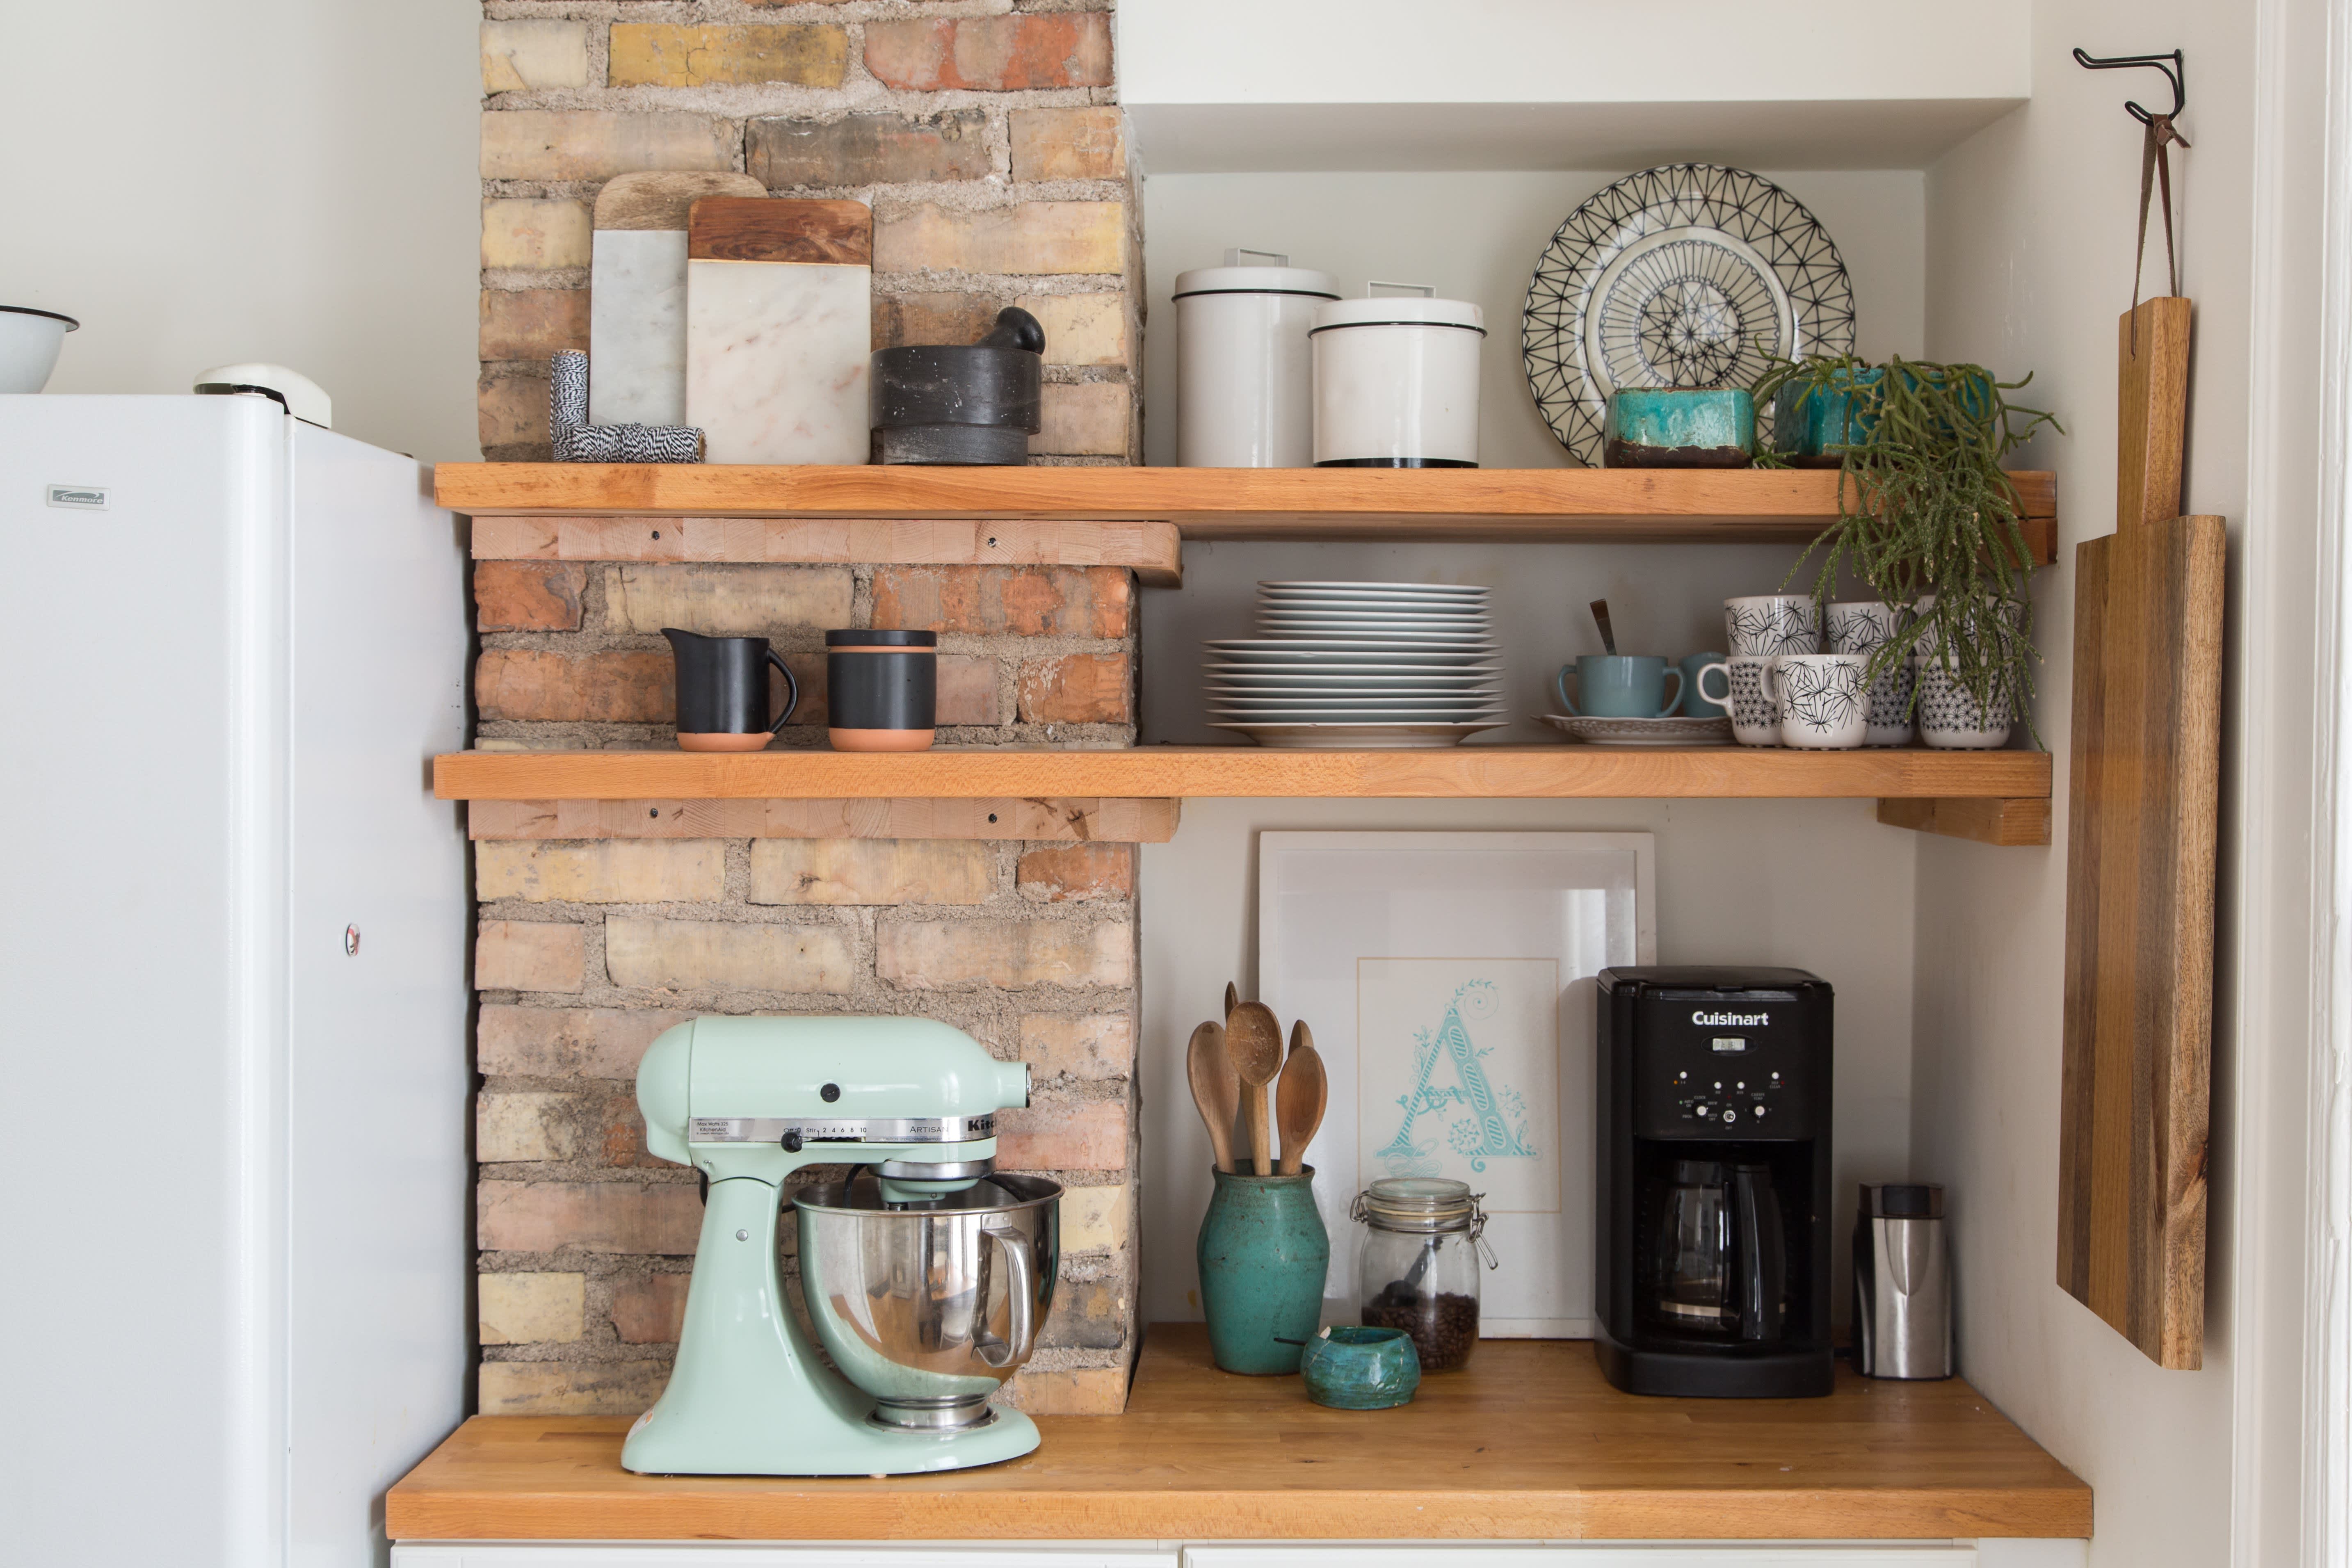 Minimalist Kitchen Essentials: Small Appliances - The Fresh Exchange